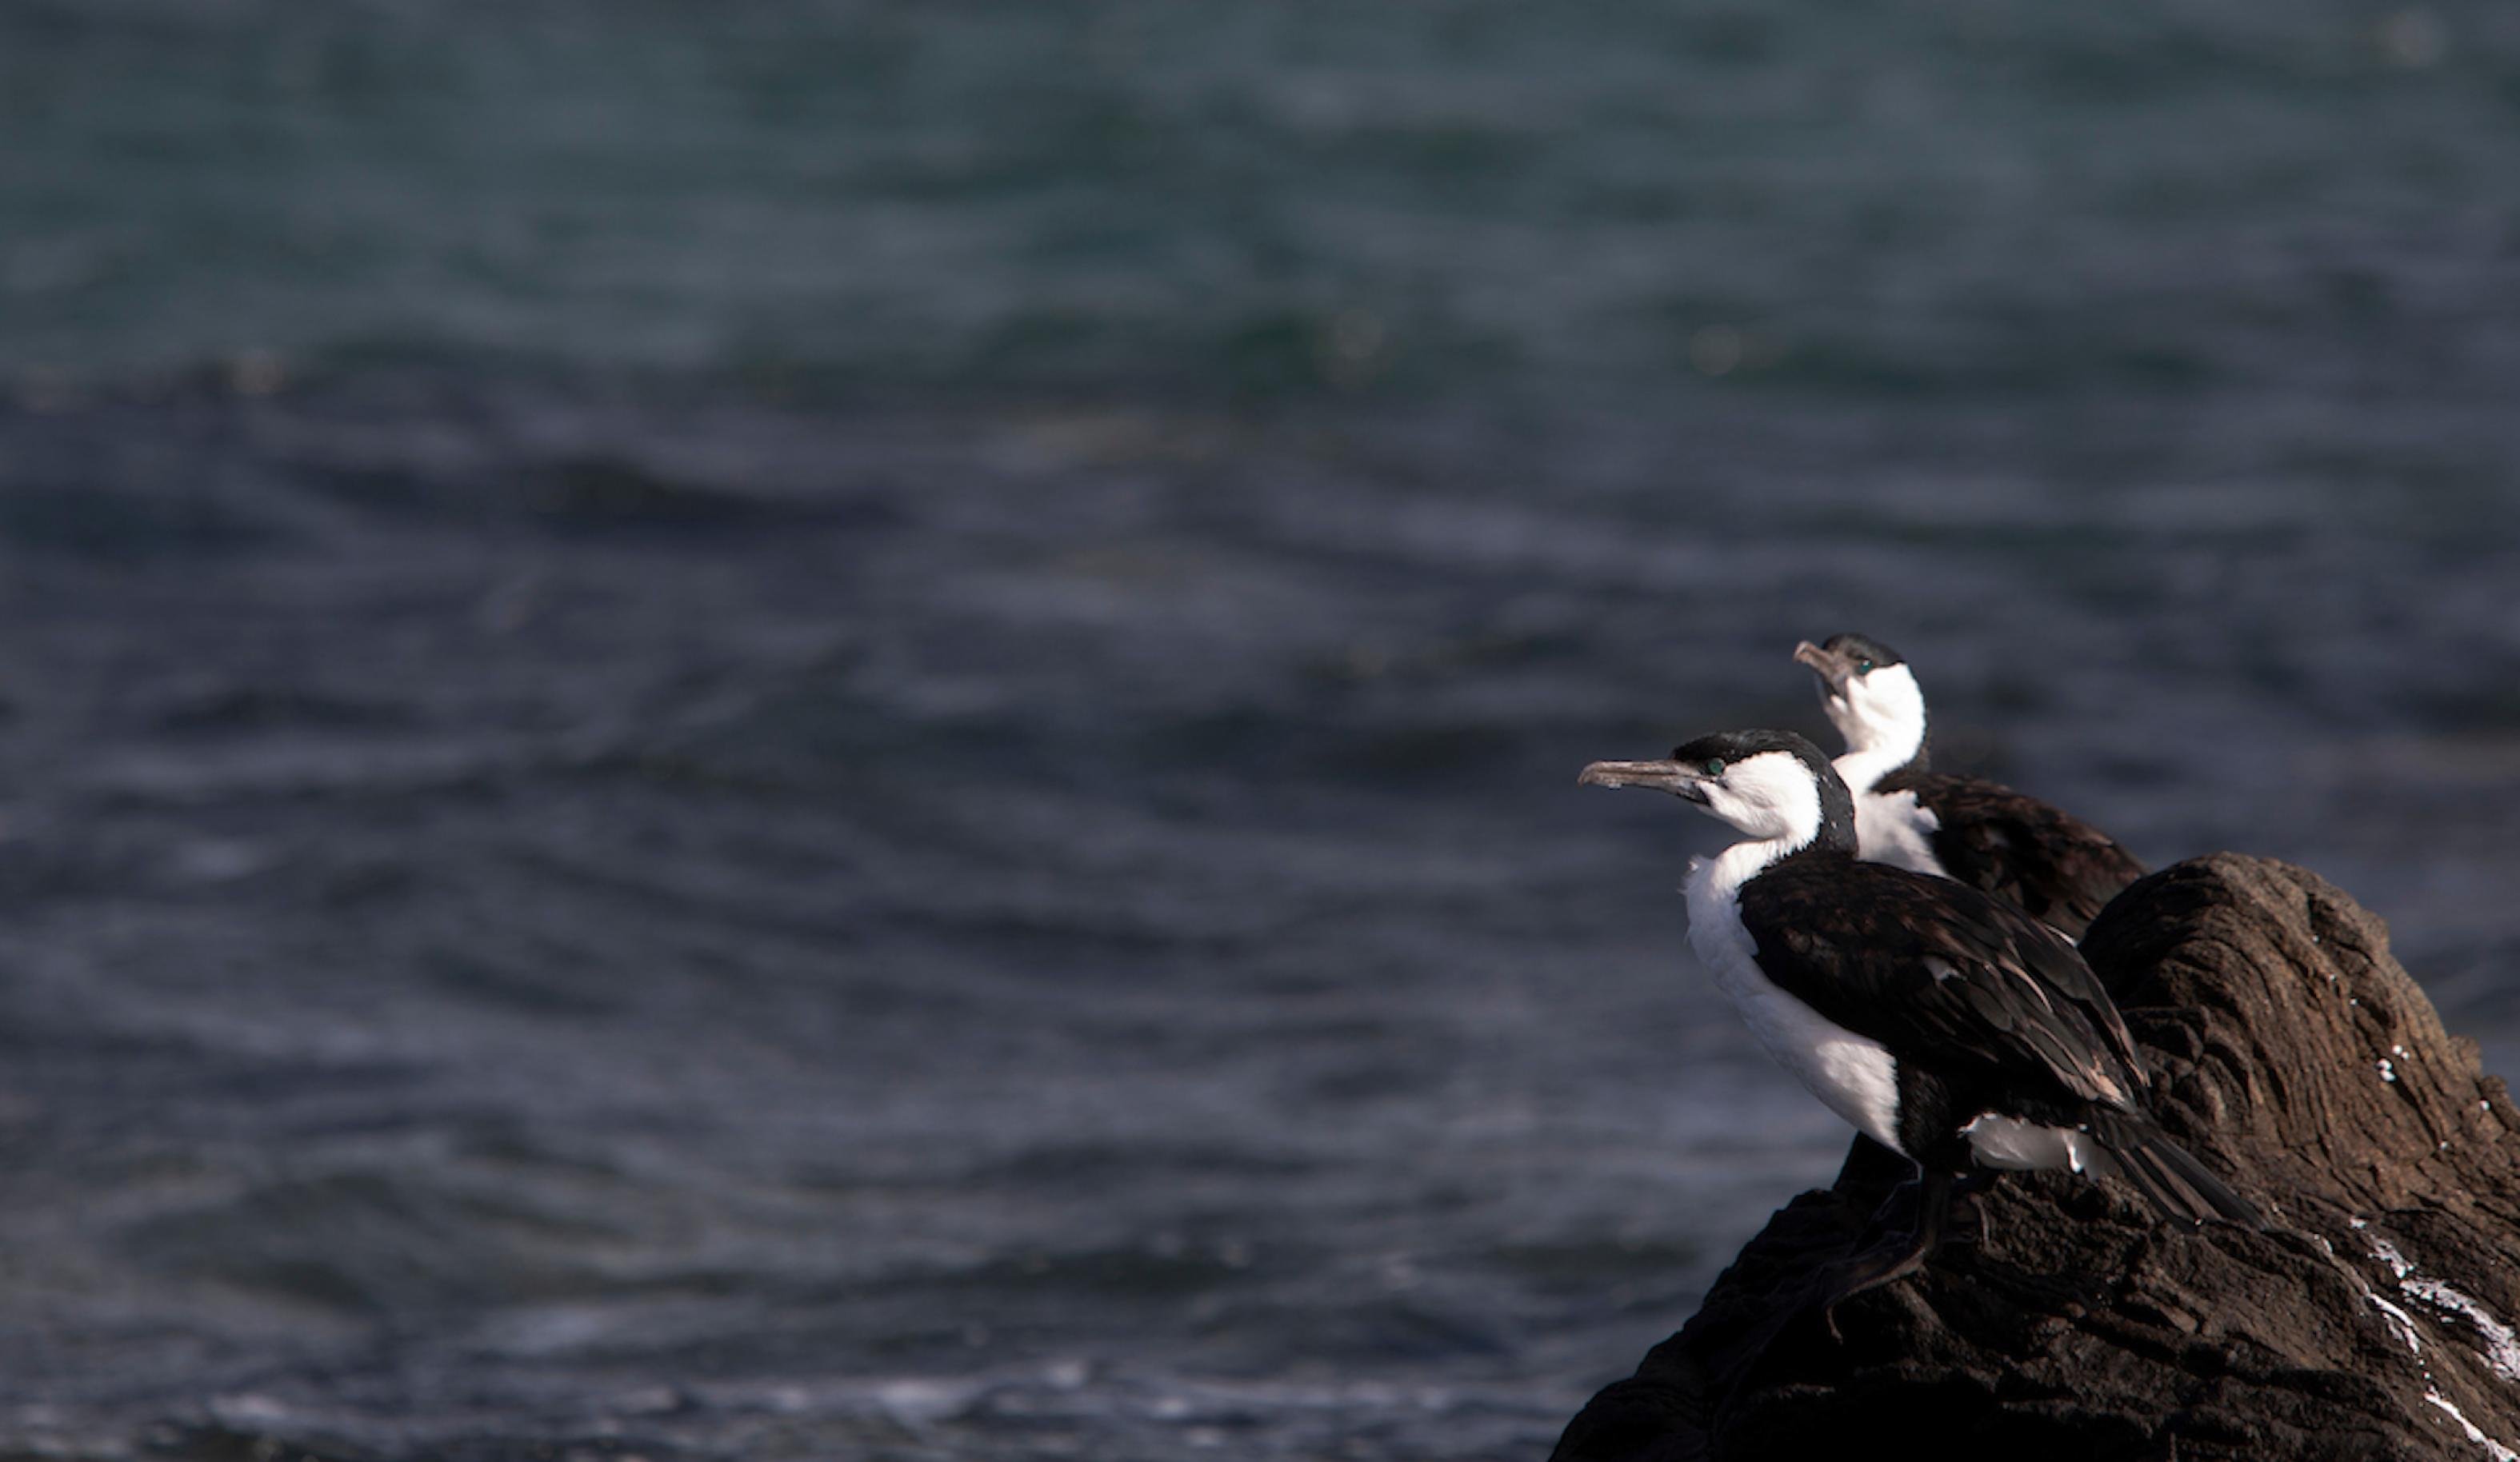 Ein Elsternscharben-Paar hockt auf den Felsen an der Küste in der Nähe von Tasmaniens Hauptstadt Hobart. Die Kromoran-Art hat ein schwarze Kappe, dunkle Rückenfedern und einen weißen Hals und Bauch.